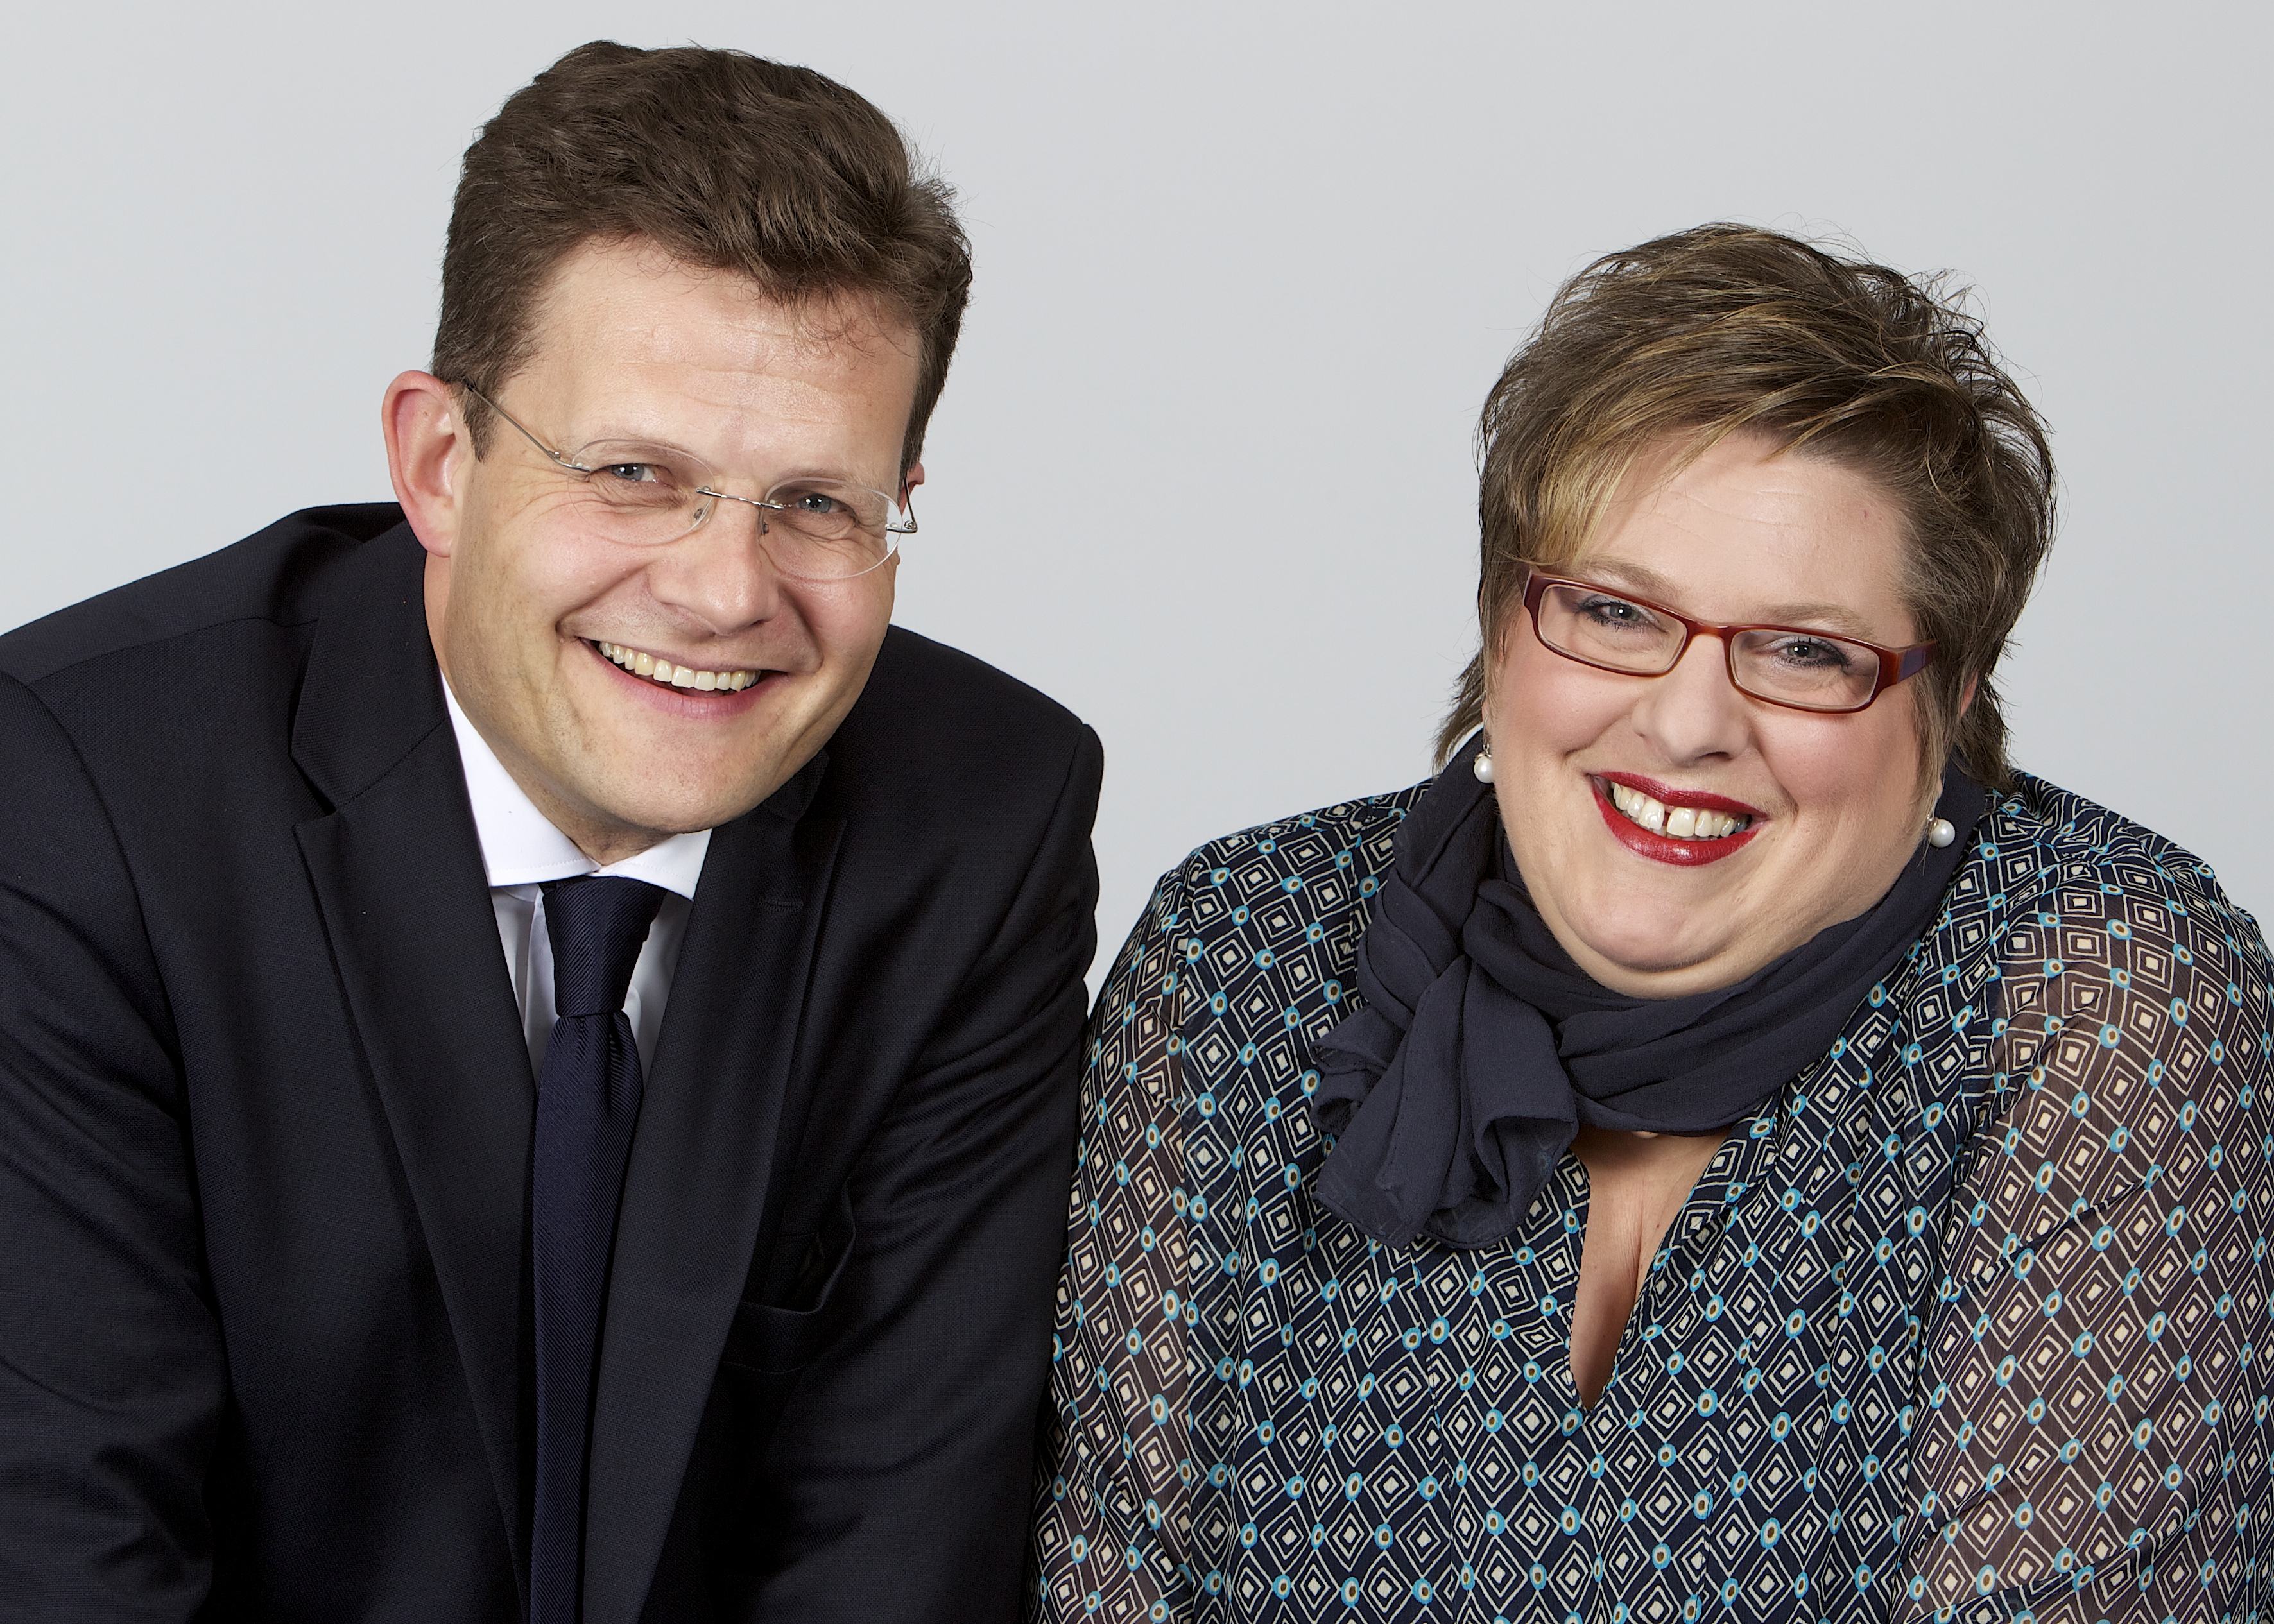 Marcus Smola, Geschäftsführer Best Western Hotels Deutschland, und Carmen Dücker, stellvertretende Geschäftsführerin Best Western Hotels Deutschland